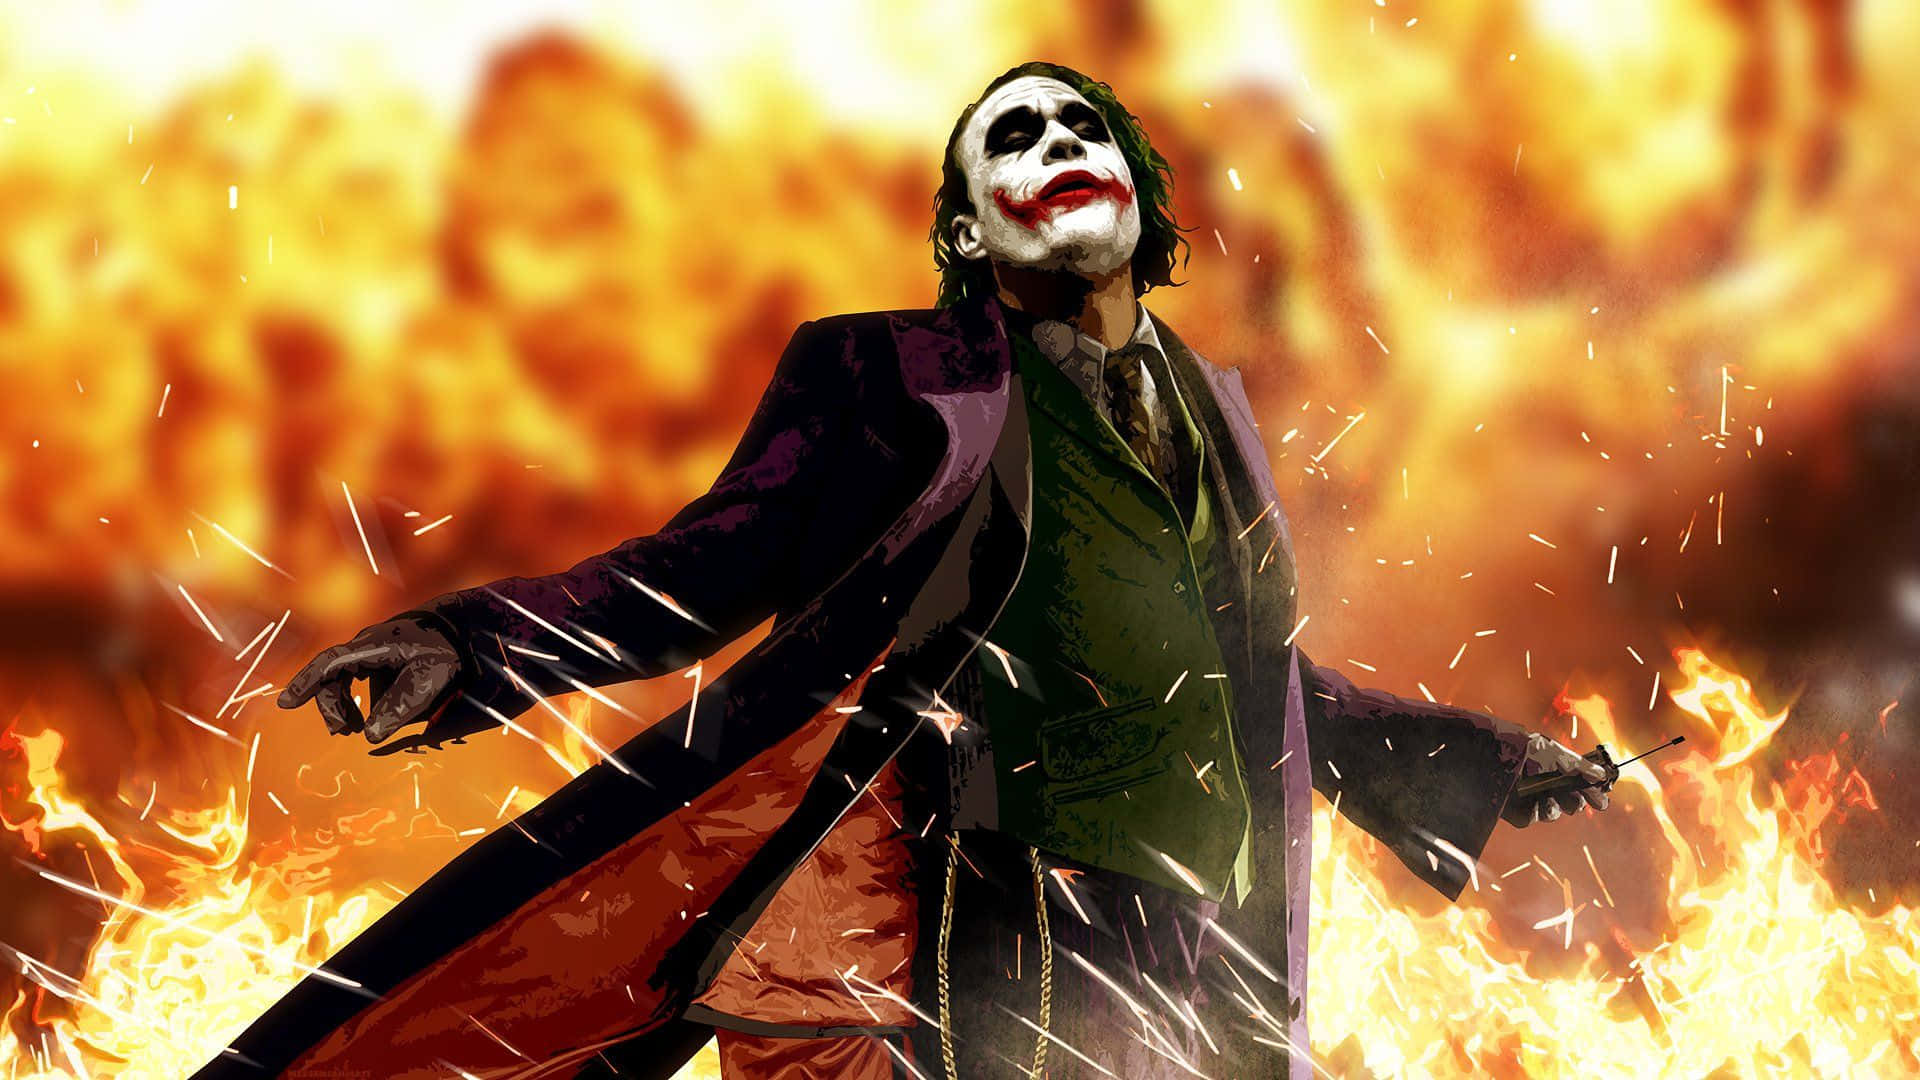 Cool Dangerous Joker Flames Art